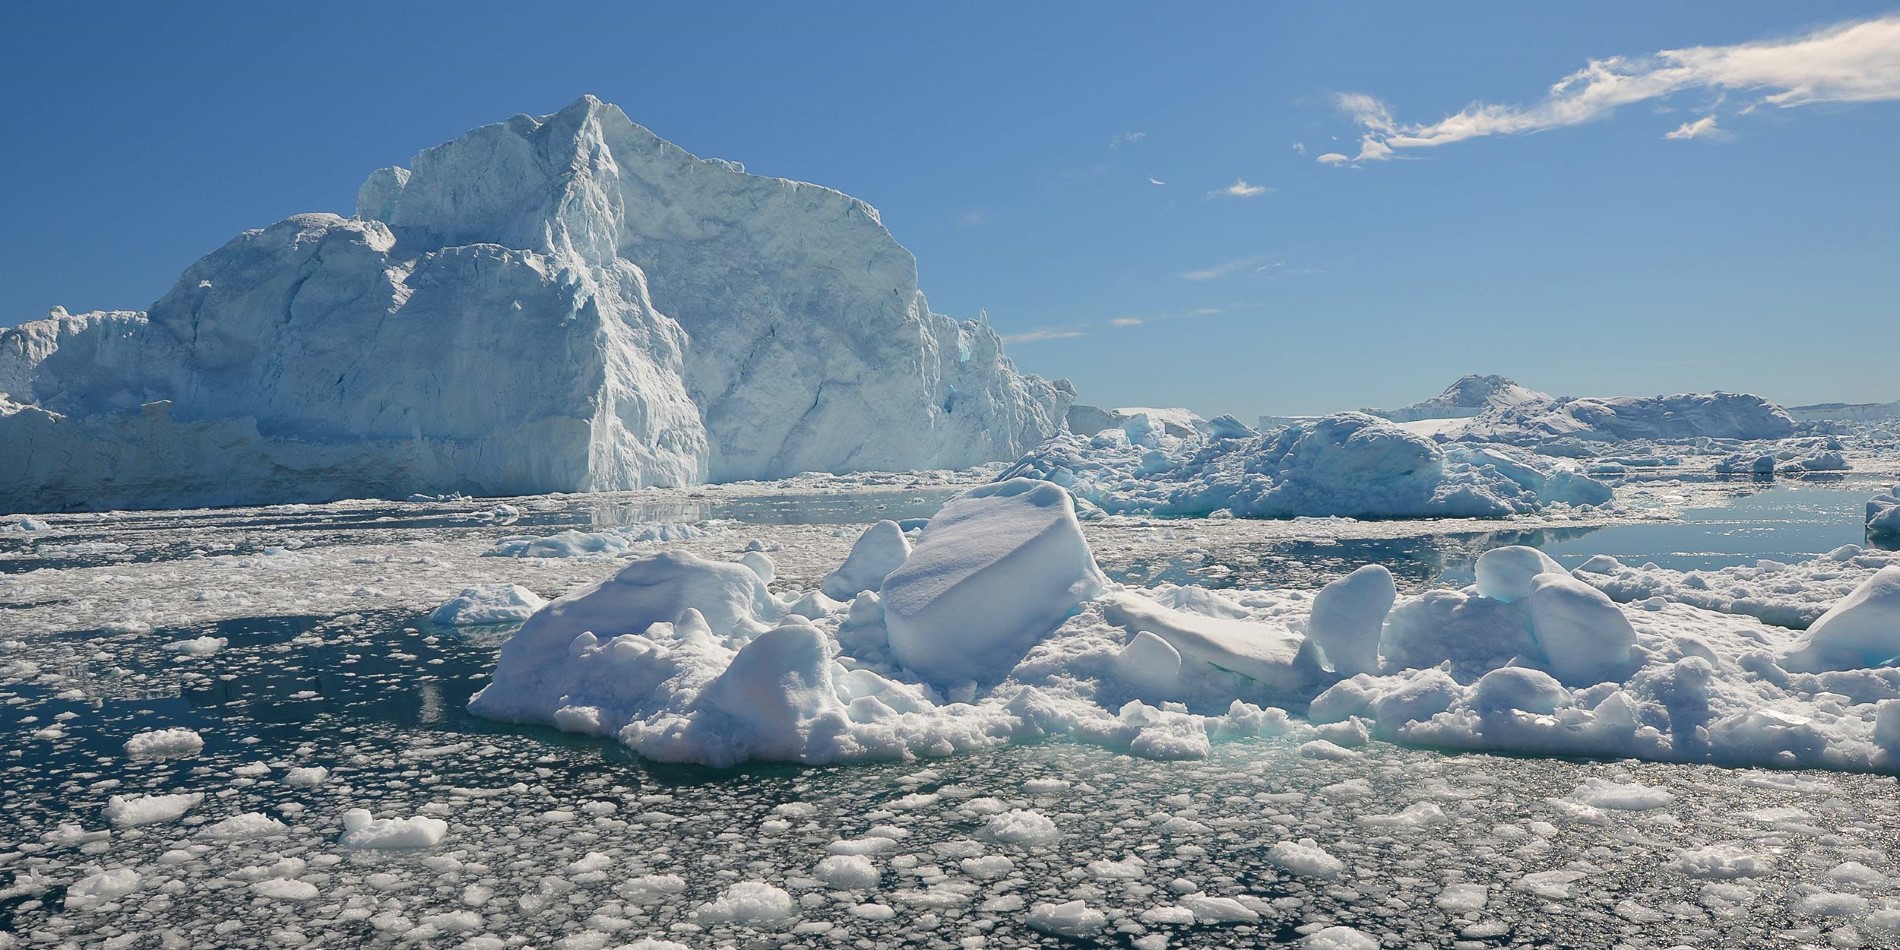 Majestætisk udsigt over is og isbjerge